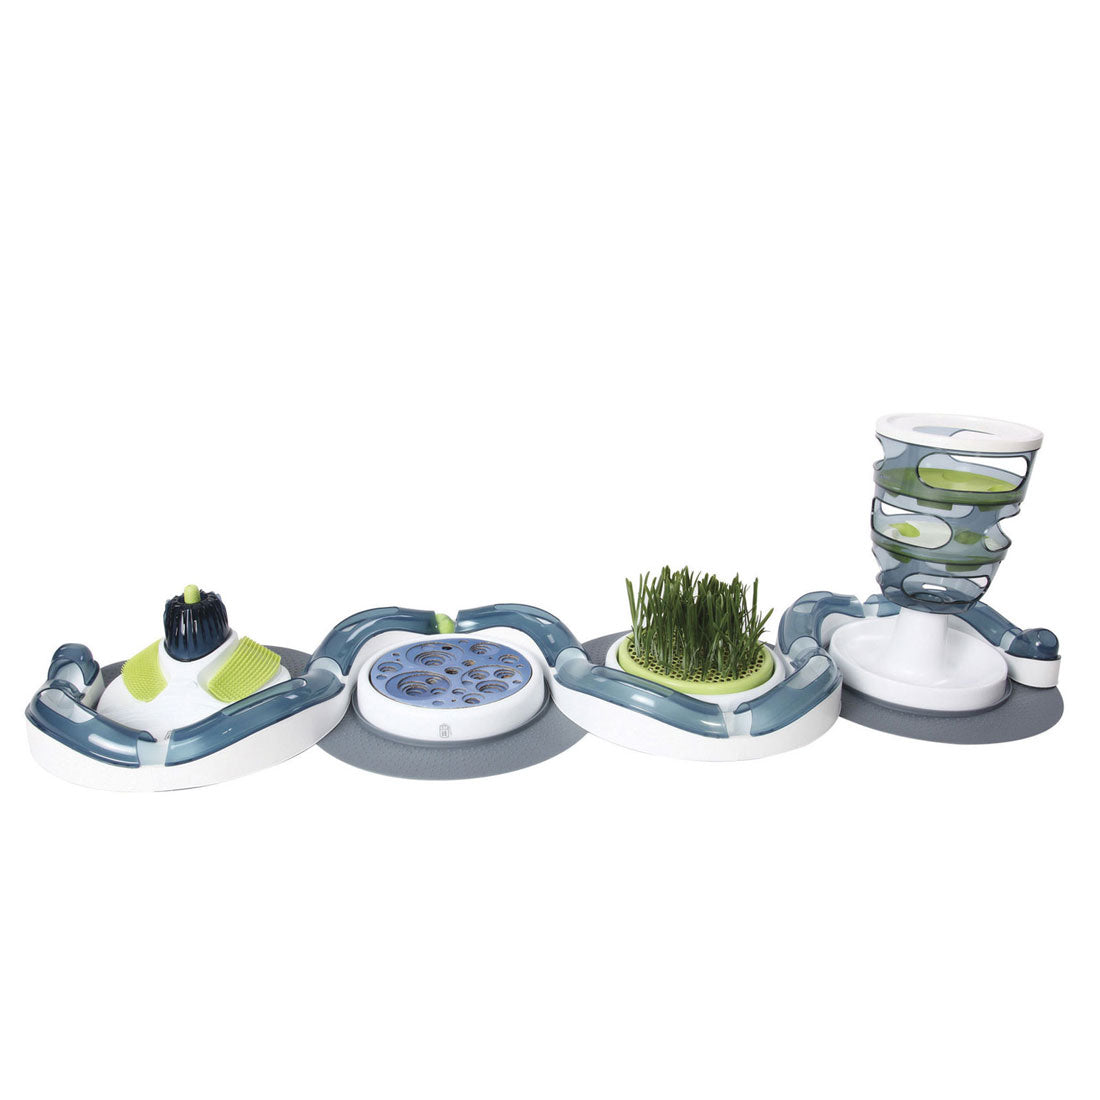 Catit Design Senses Grass Garden Kit